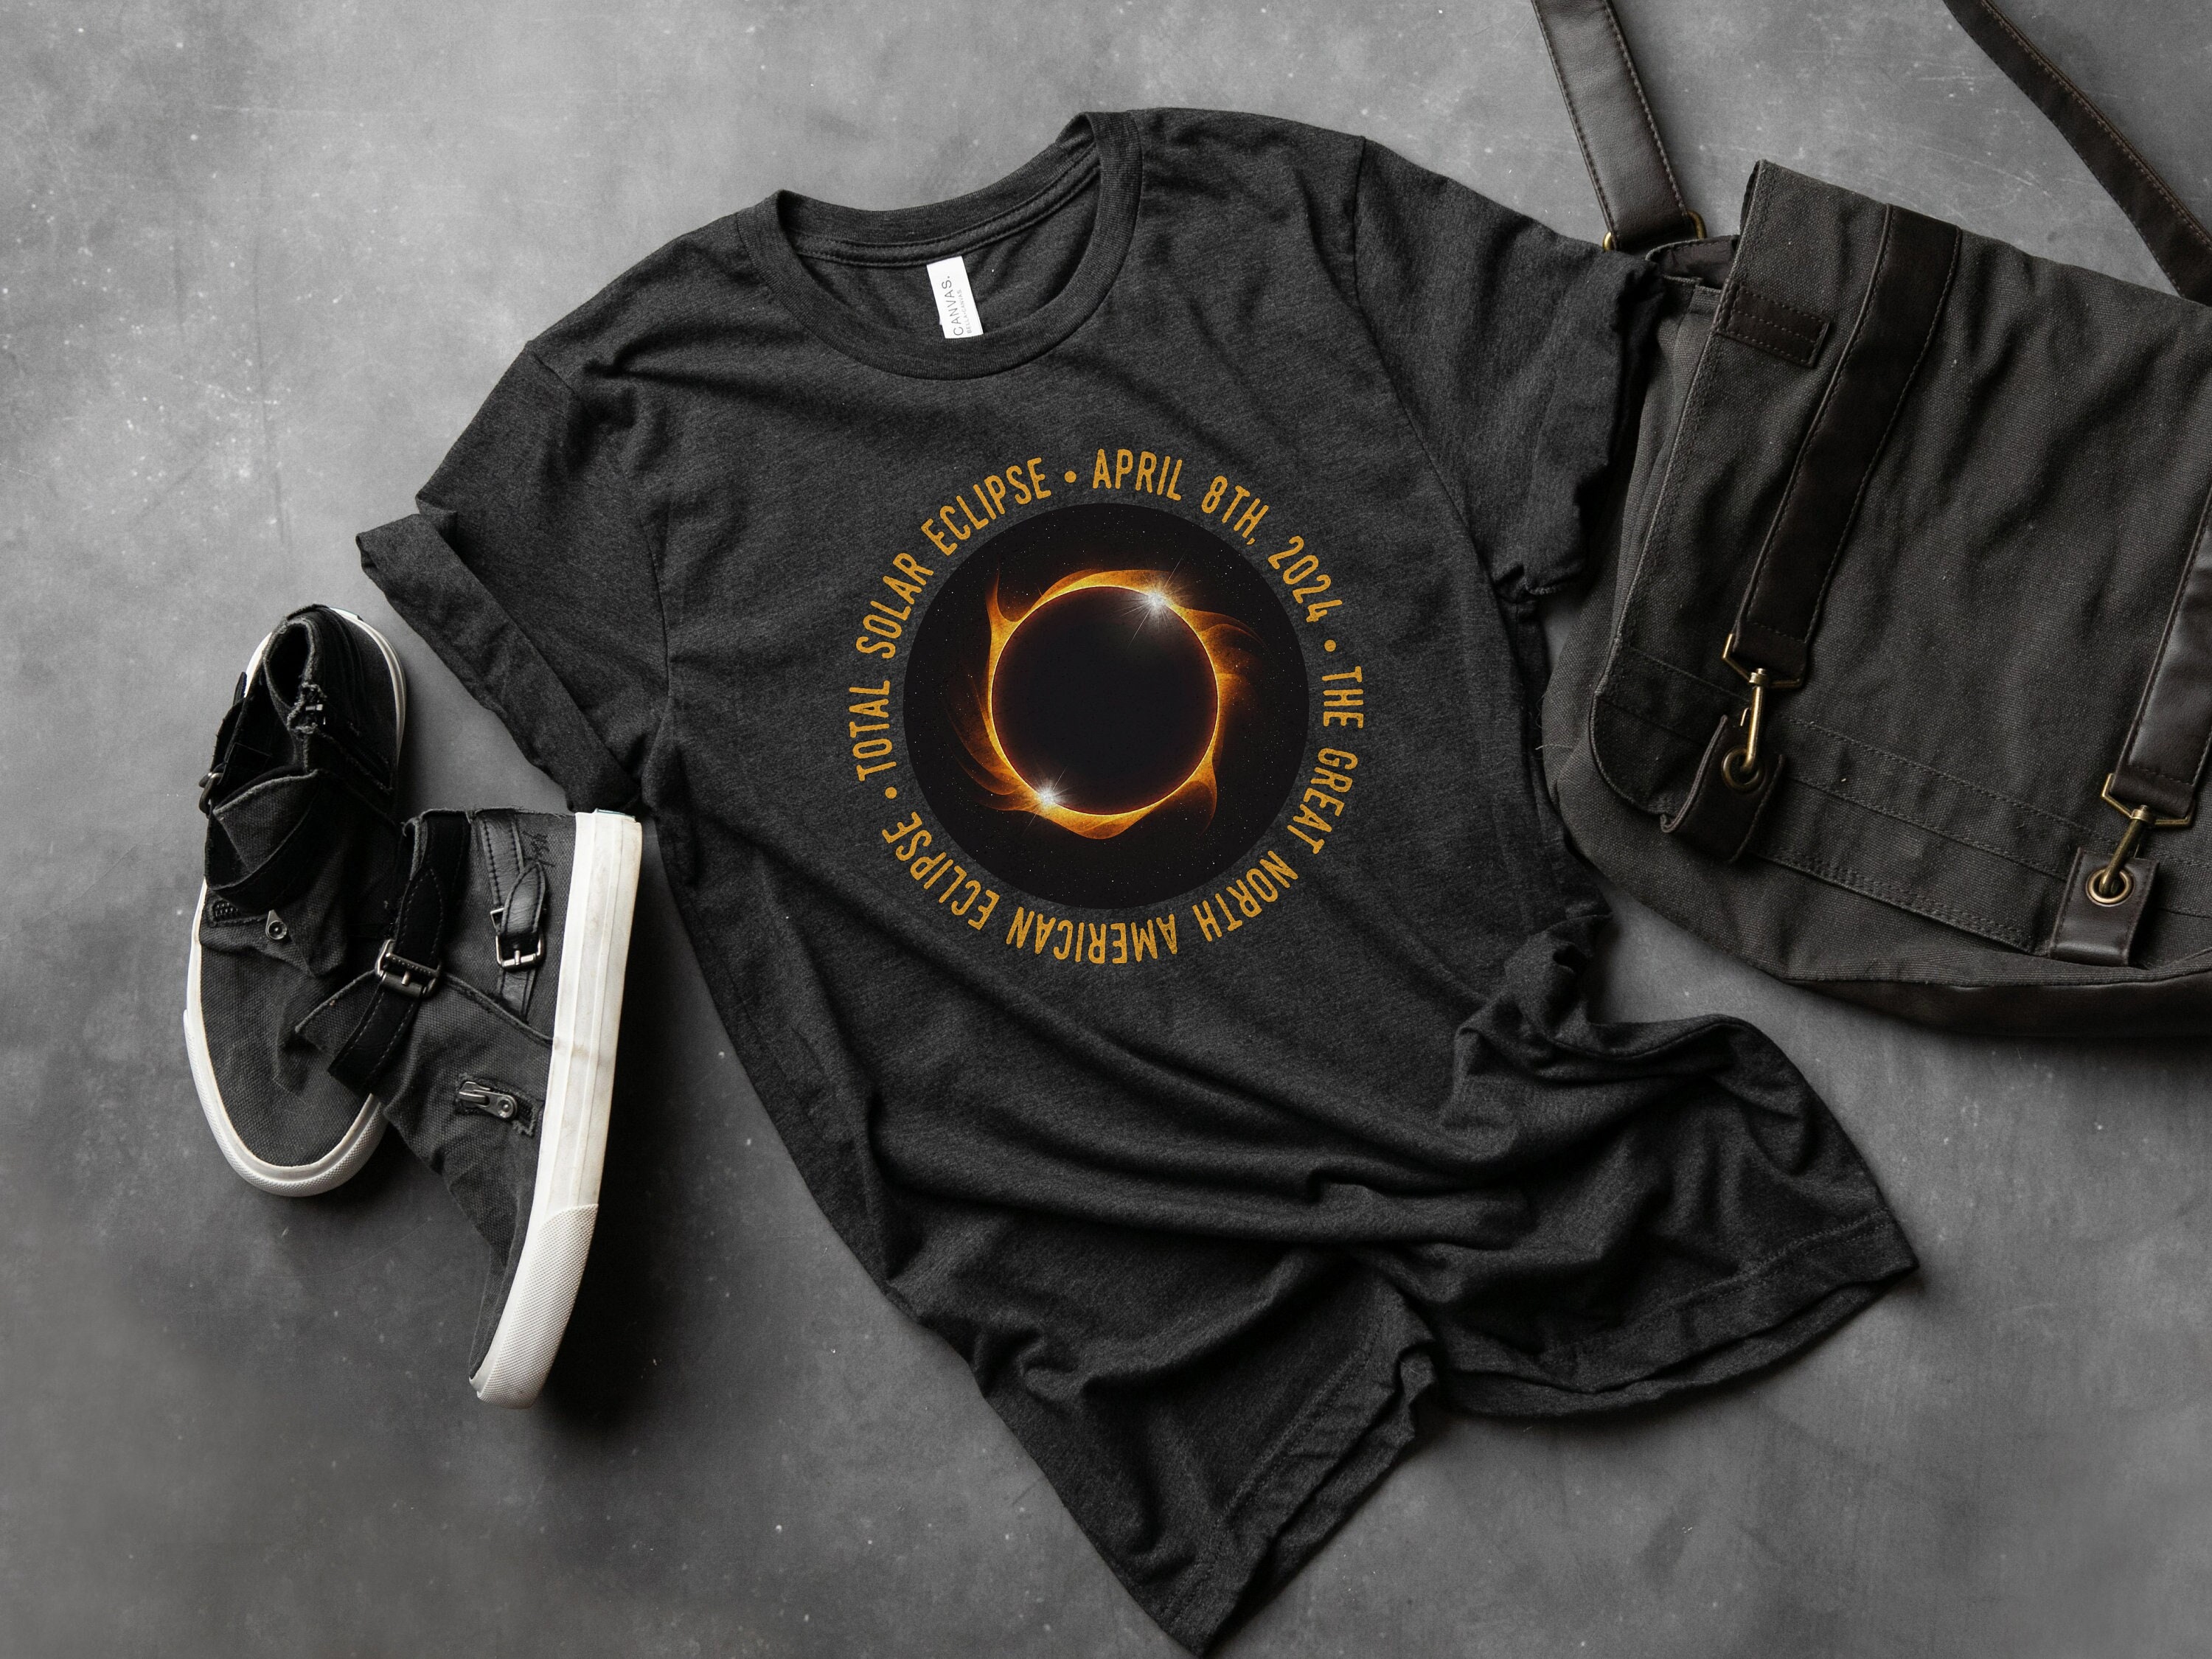 2024 Total Solar Eclipse Watchers Shirt Abstract Art Fans V-Neck T-Shirt